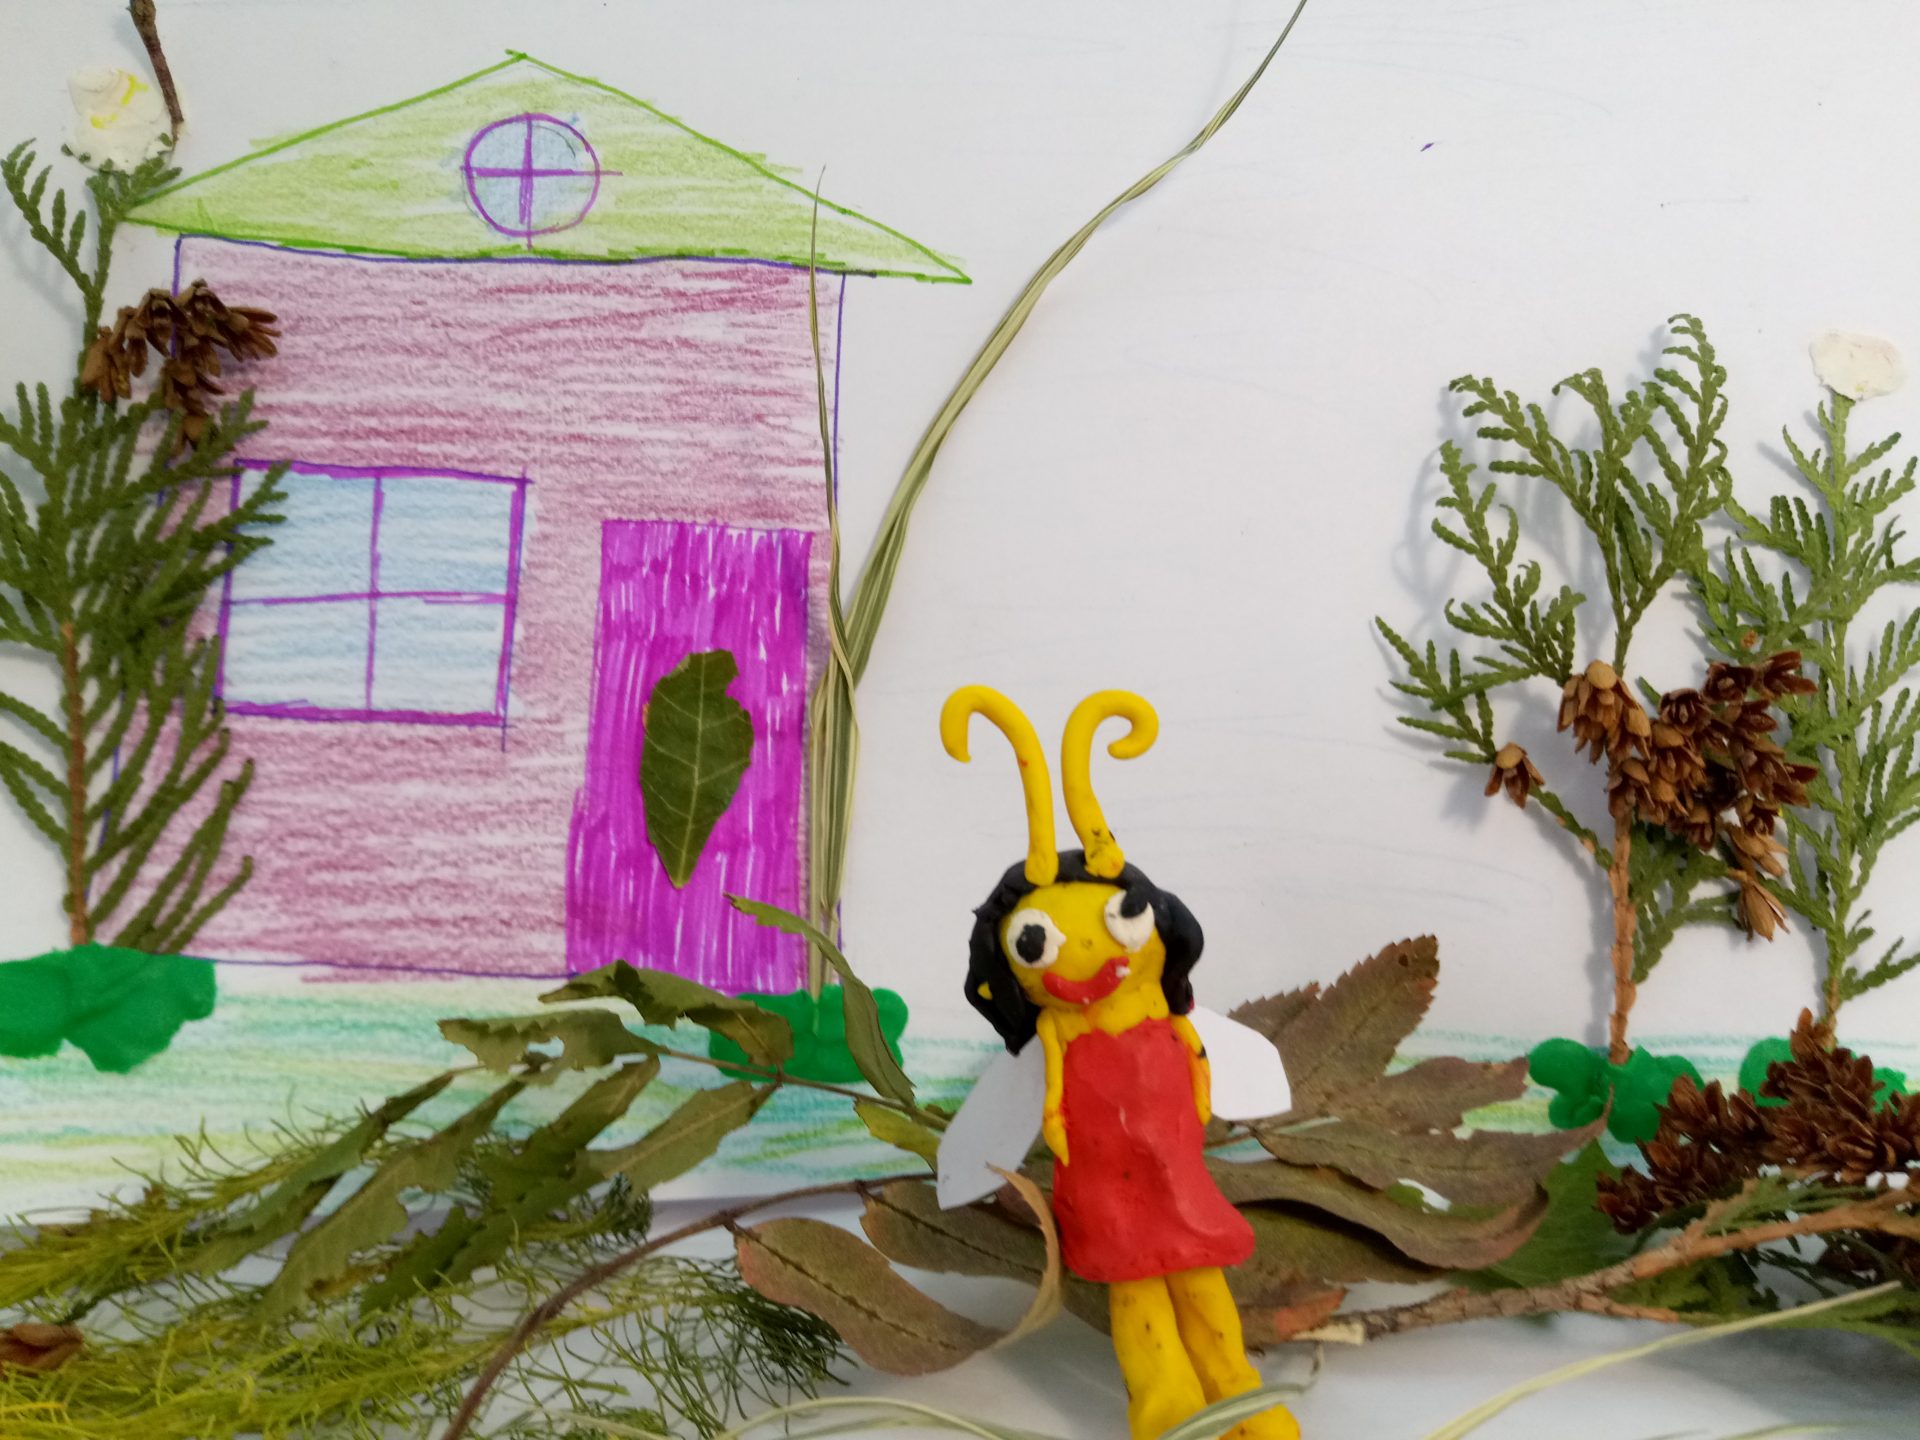 На фото изображена стрекоза из жёлтого пластилина в красном платье. Она стоит на фоне розового дома с ярко зеленой крышей. Крылышки у стрекозы сделаны из белой бумаги. Справа дерево из веточки туи. Слева тоже дерево. 